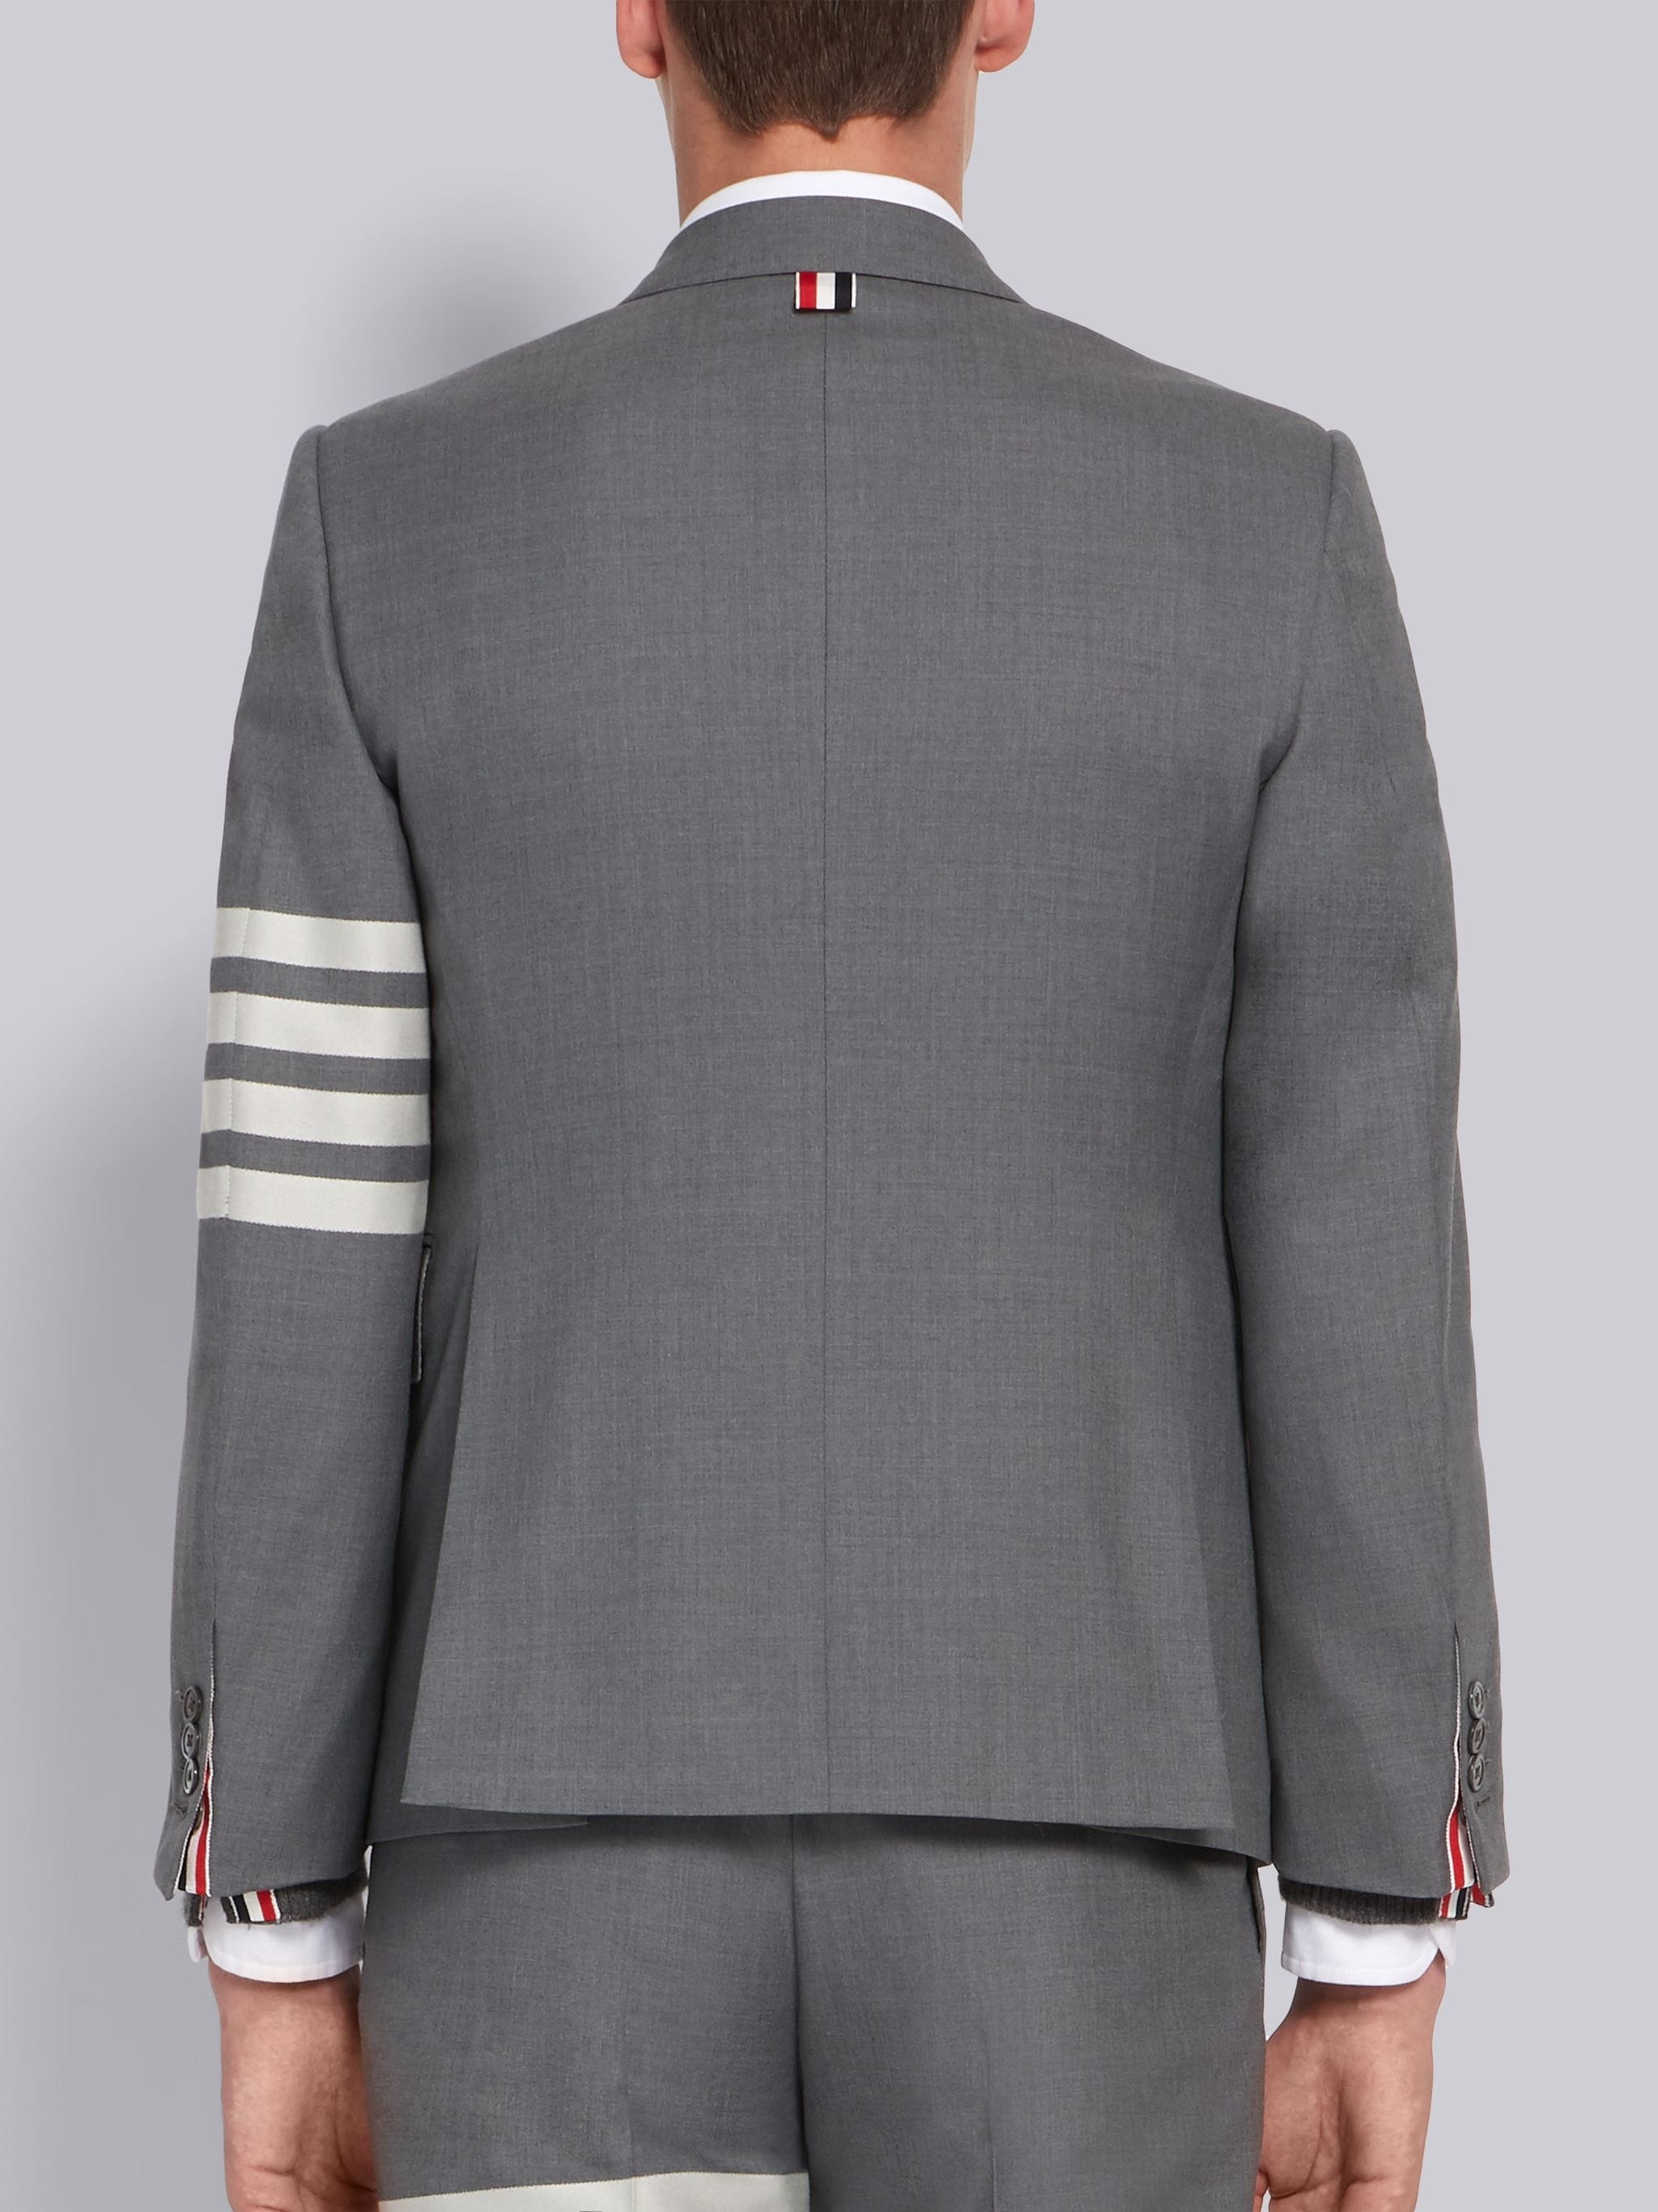 Medium Grey Wool 4-Bar Classic Sport Coat - 3